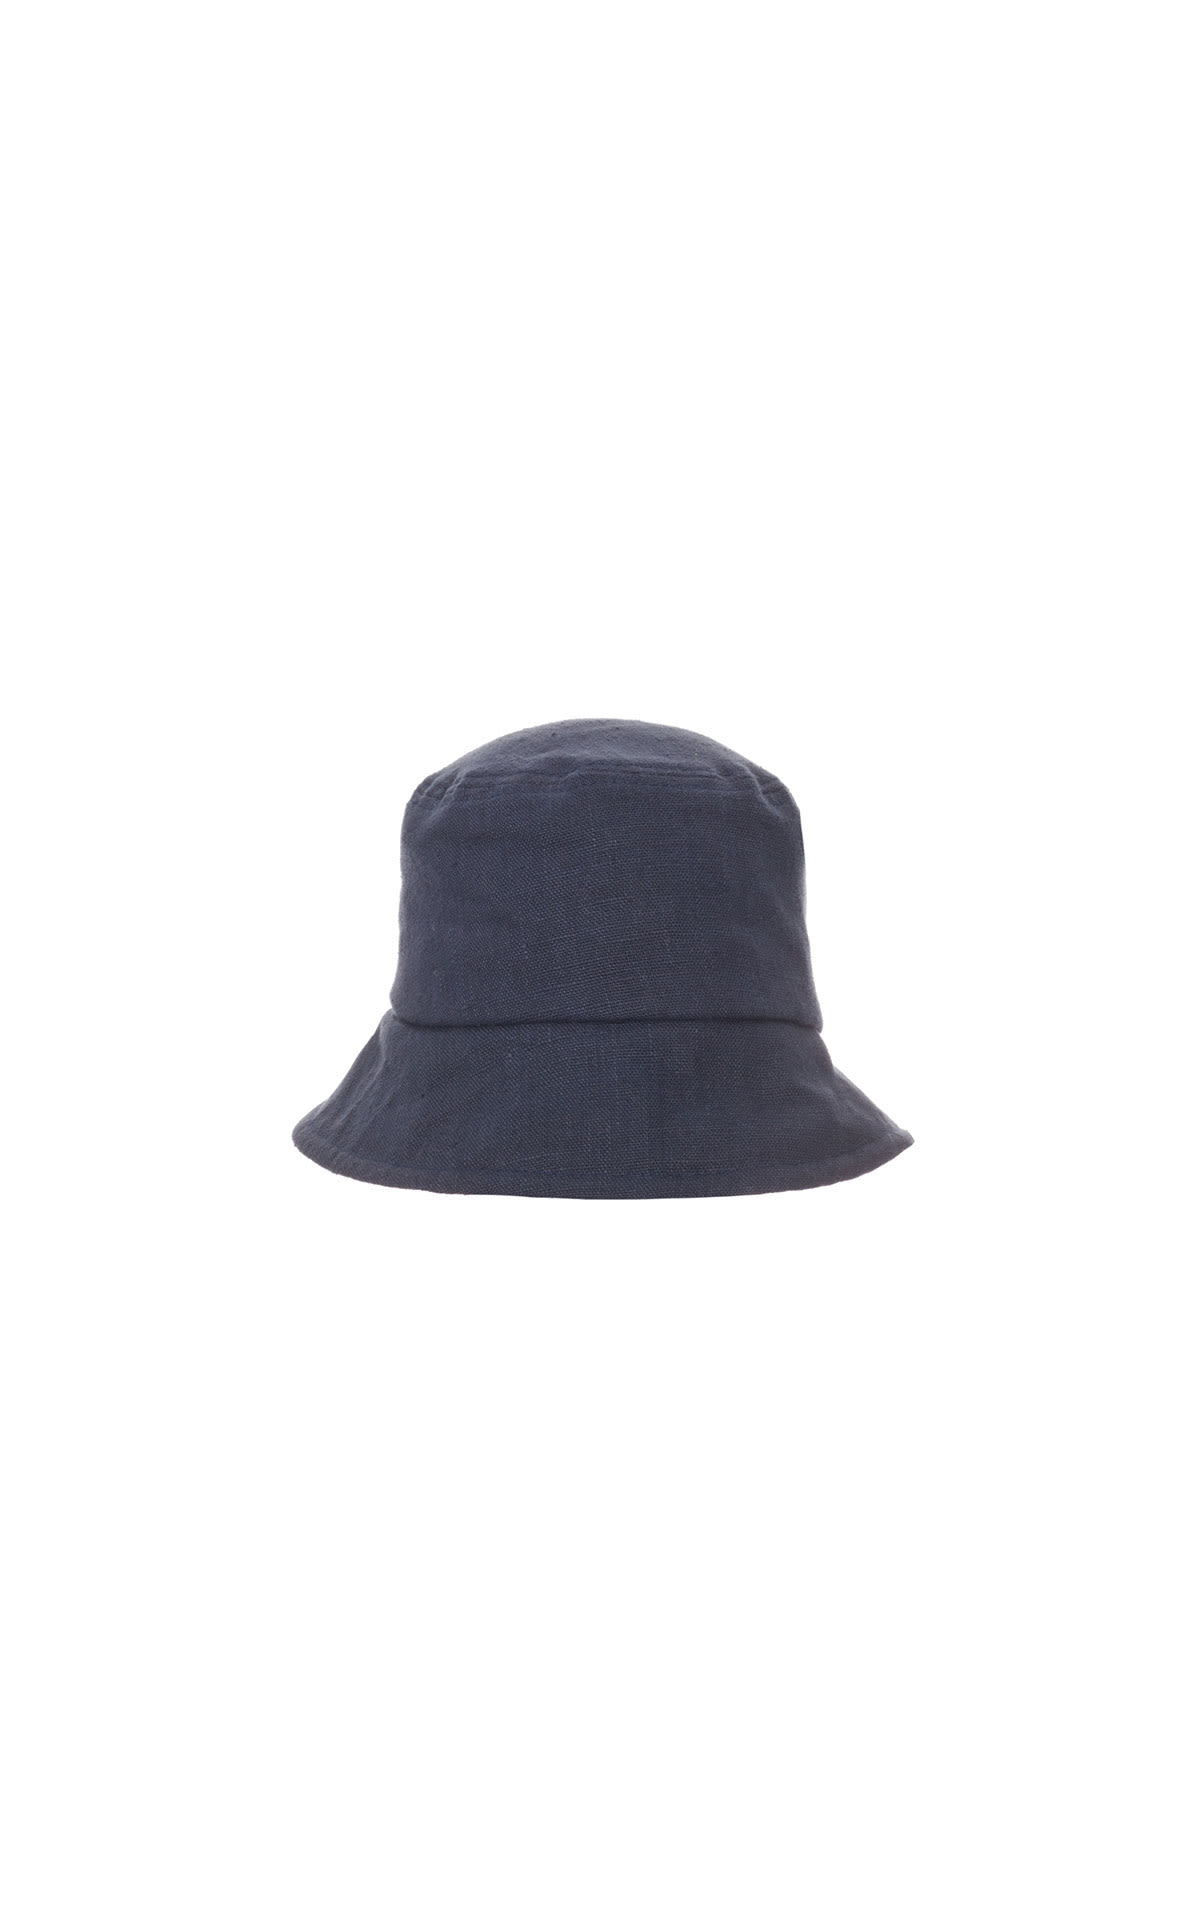 Eleventy Summer hat from Bicester Village